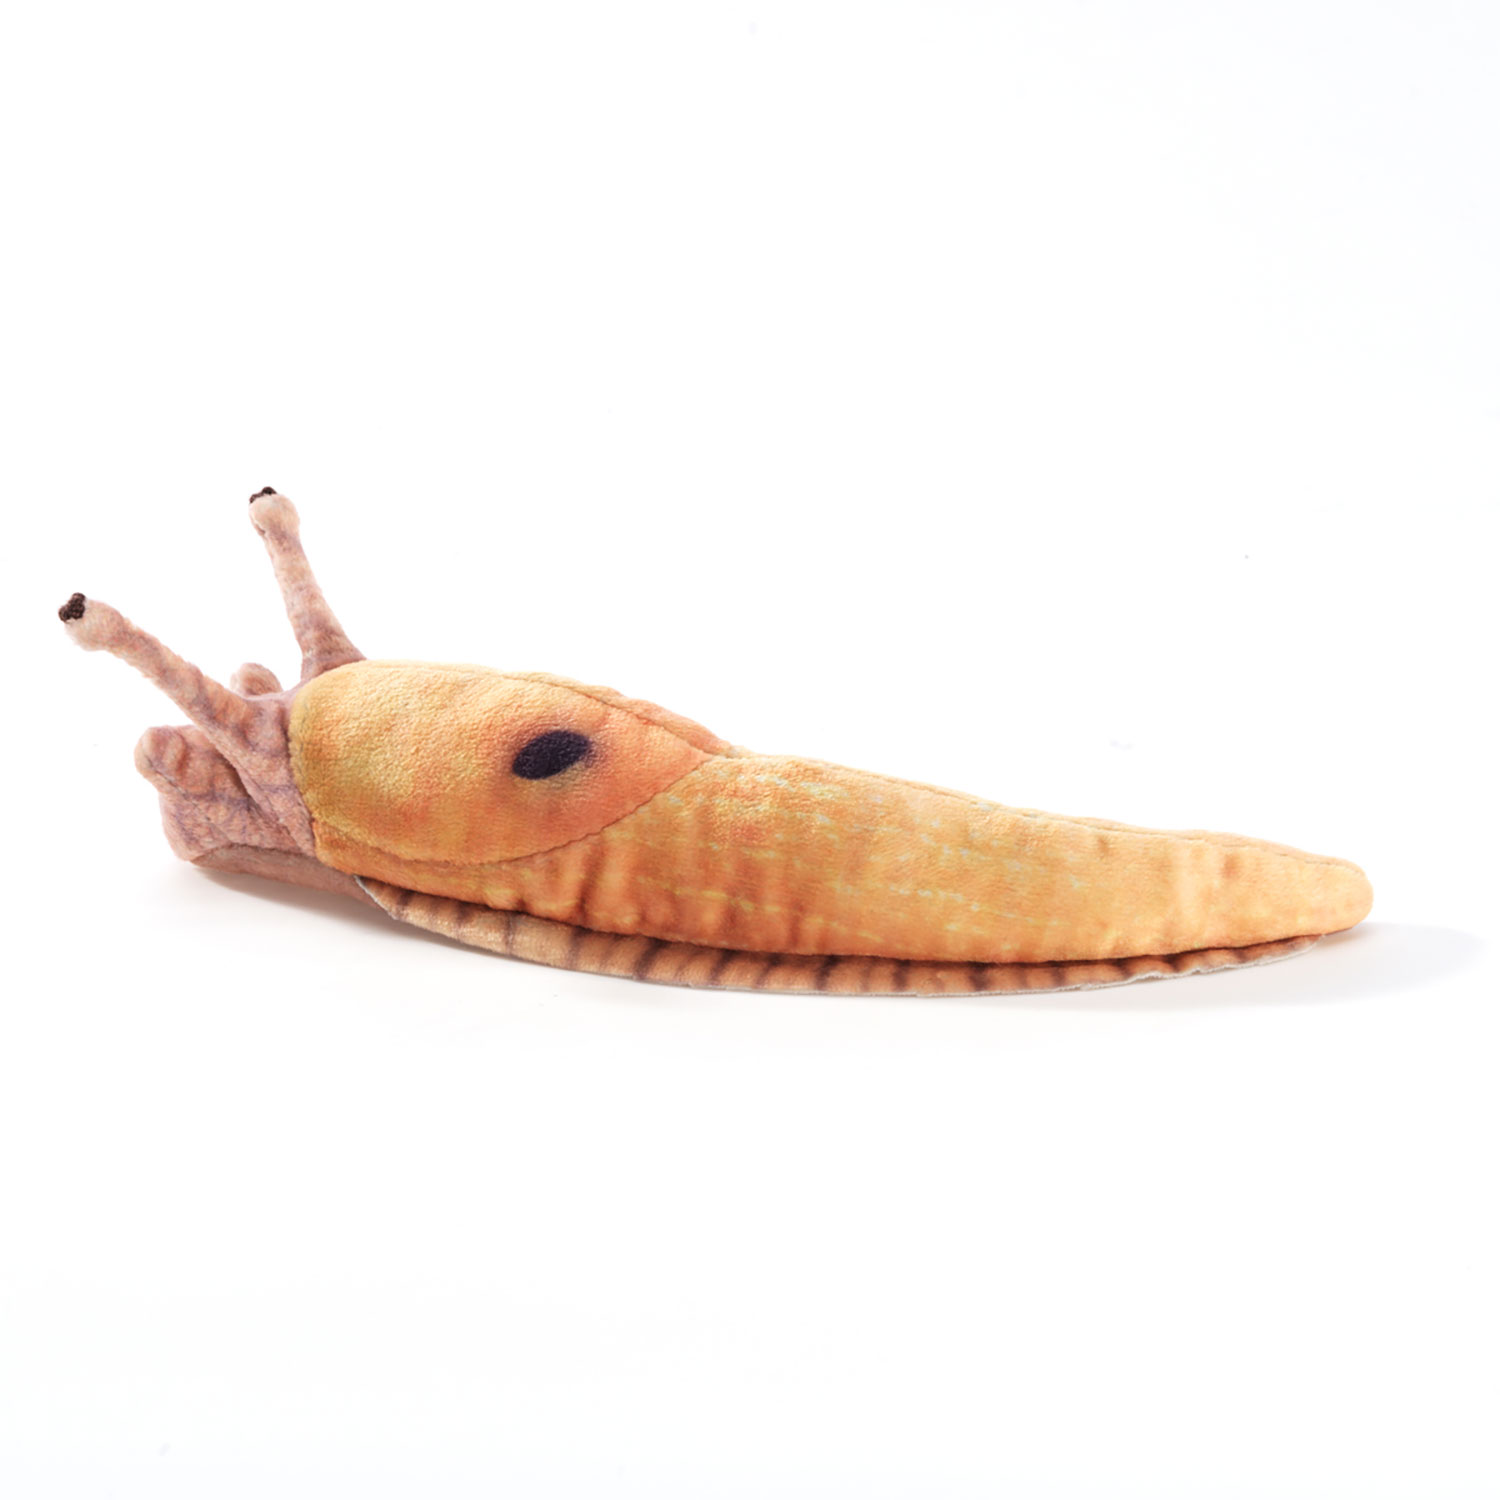 Mini Banana Slug / Mini Bananenschnecke